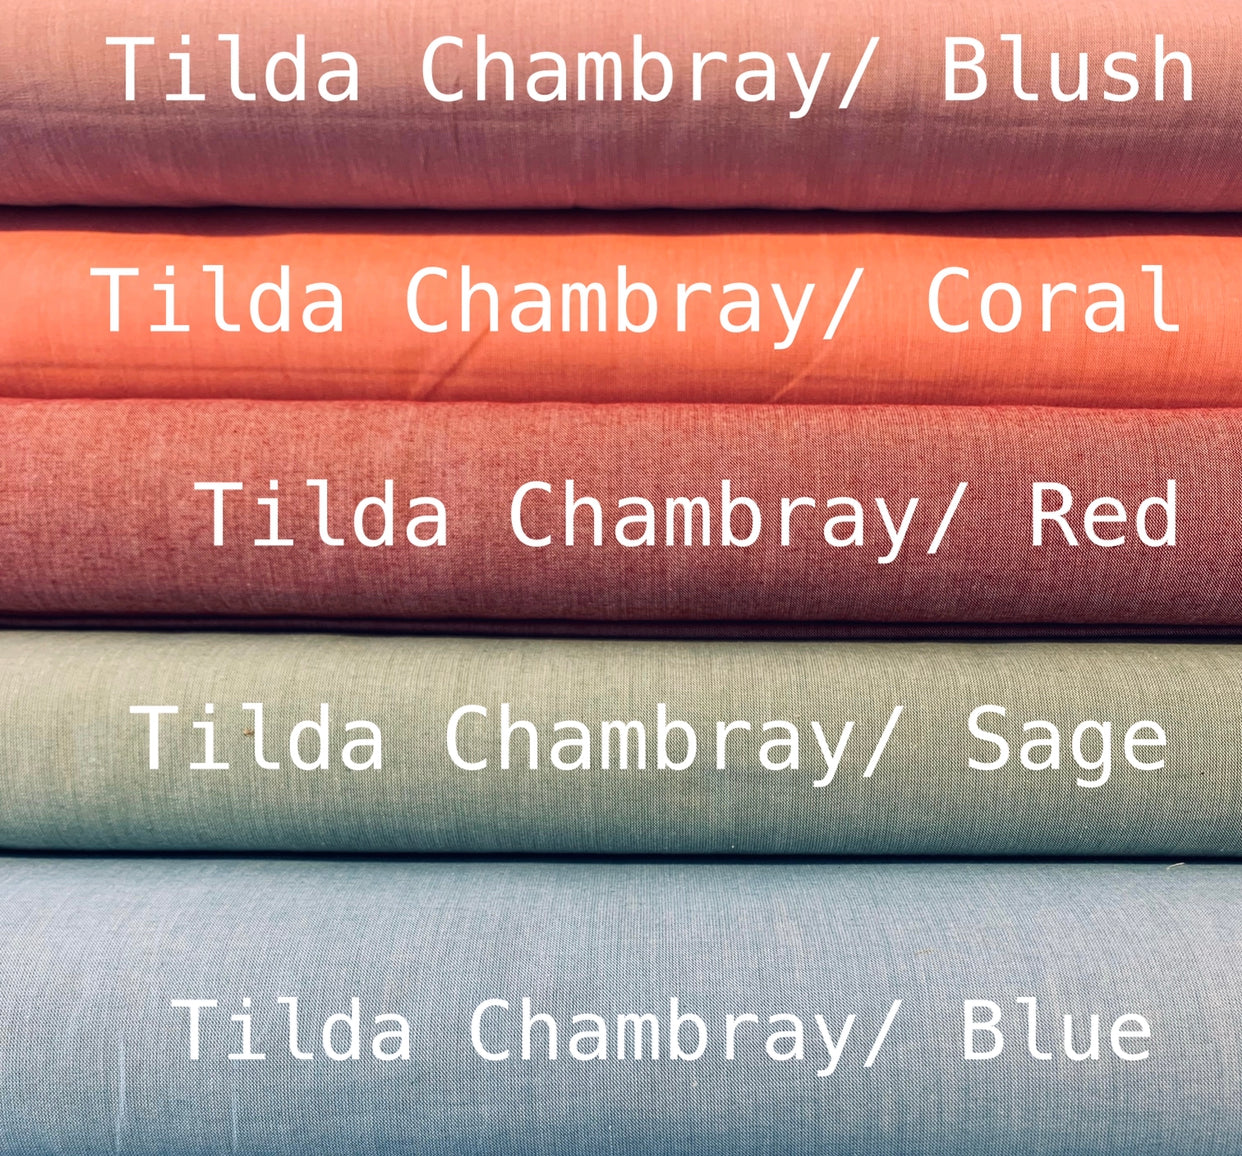 Tilda Chambray: Blush